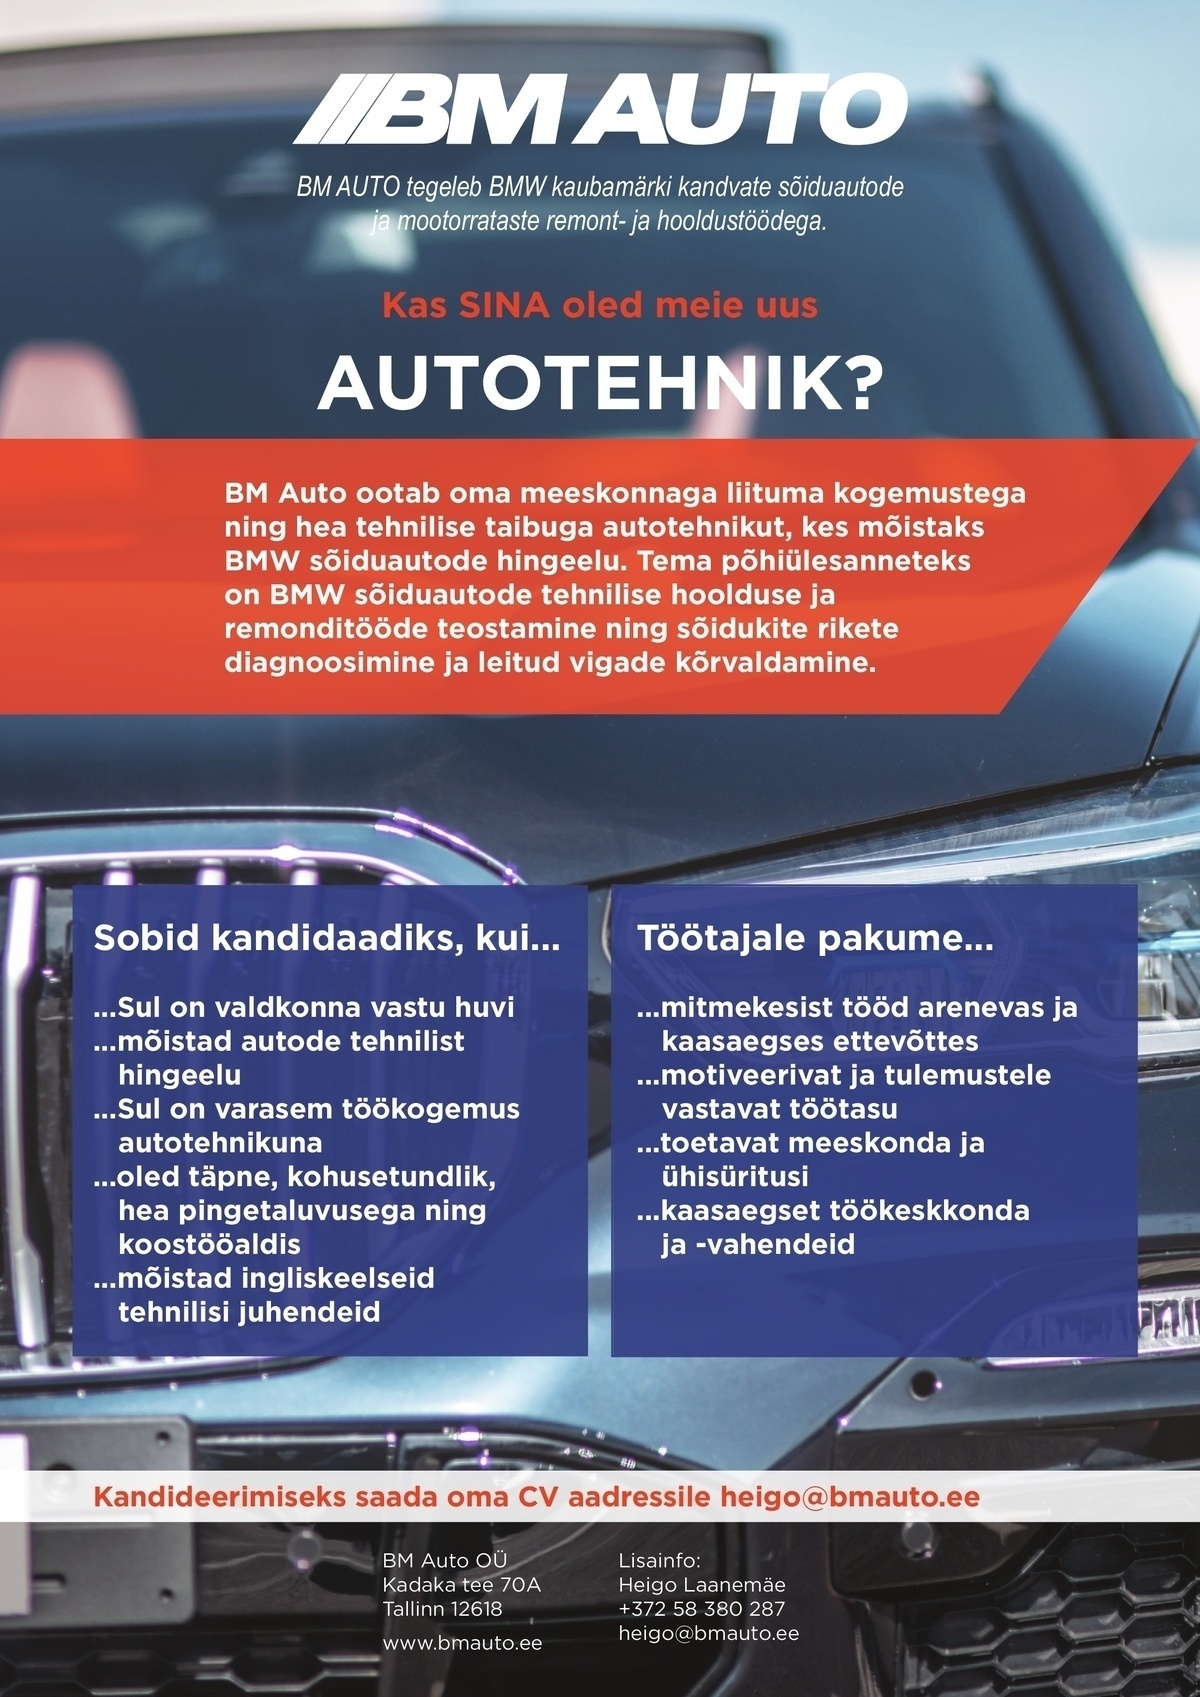 BM Auto OÜ Autotehnik